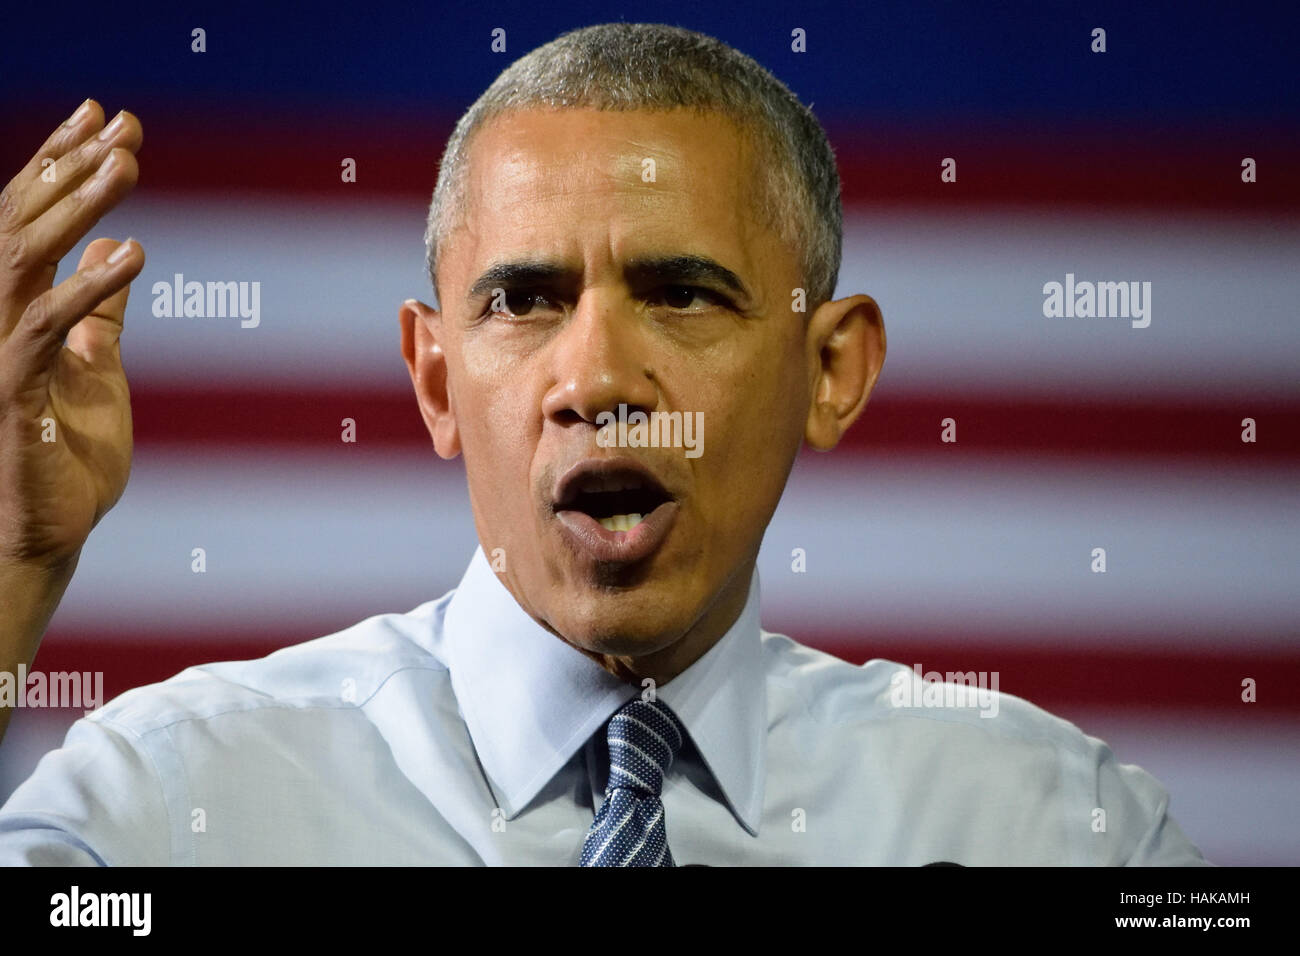 Barack Obama, Präsident der Vereinigten Staaten. Wirkungsvolle Rede vor dem Hintergrund der amerikanischen Flagge. Stockfoto